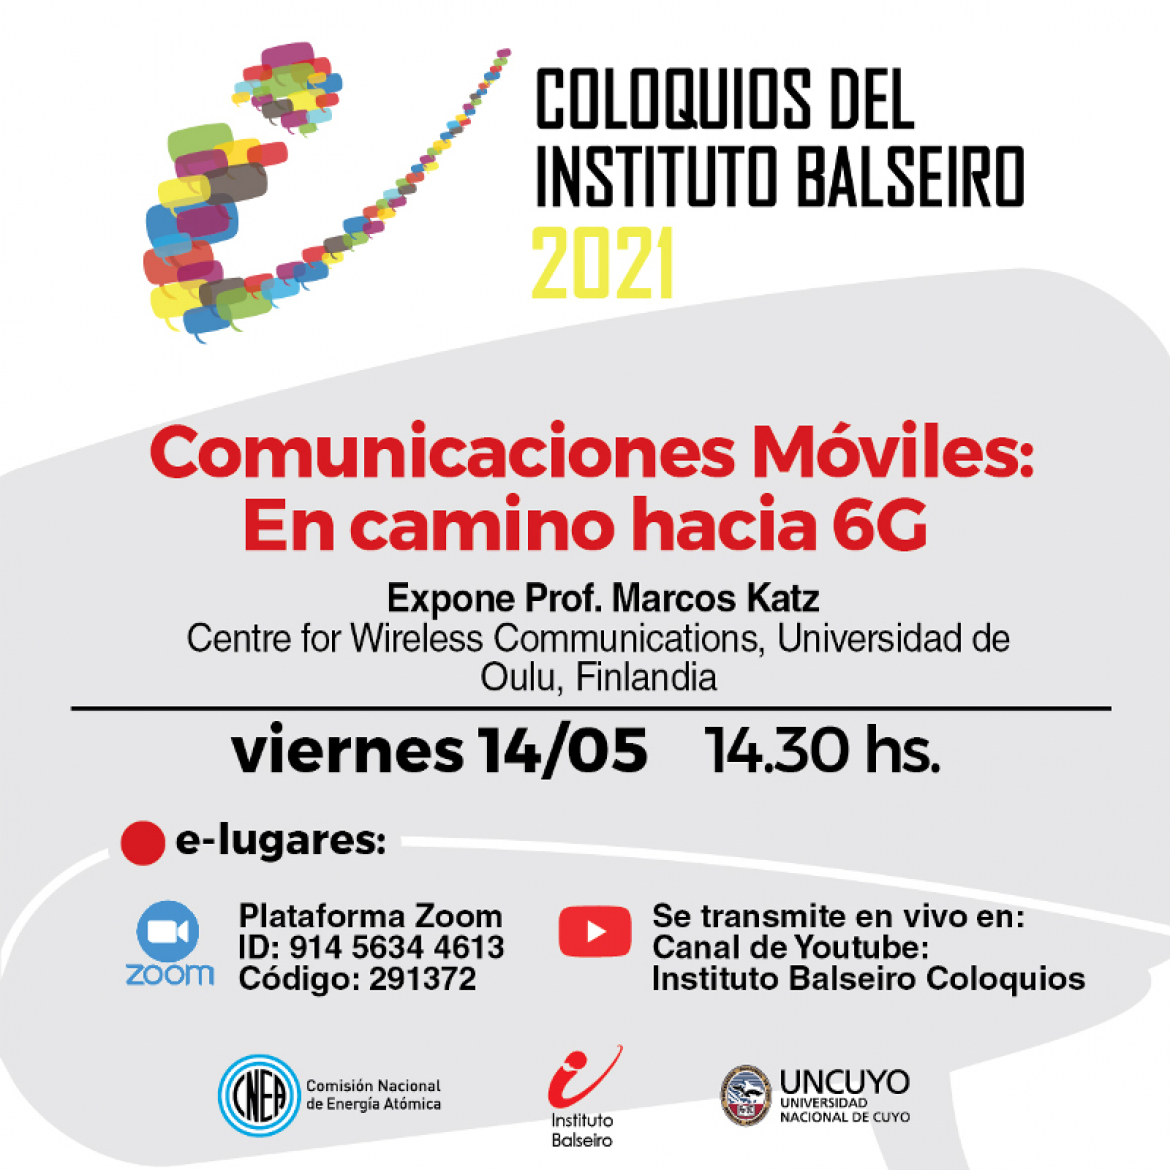 COLOQUIO DEL VIERNES 14/5 -- Comunicaciones Móviles: En camino hacia 6G